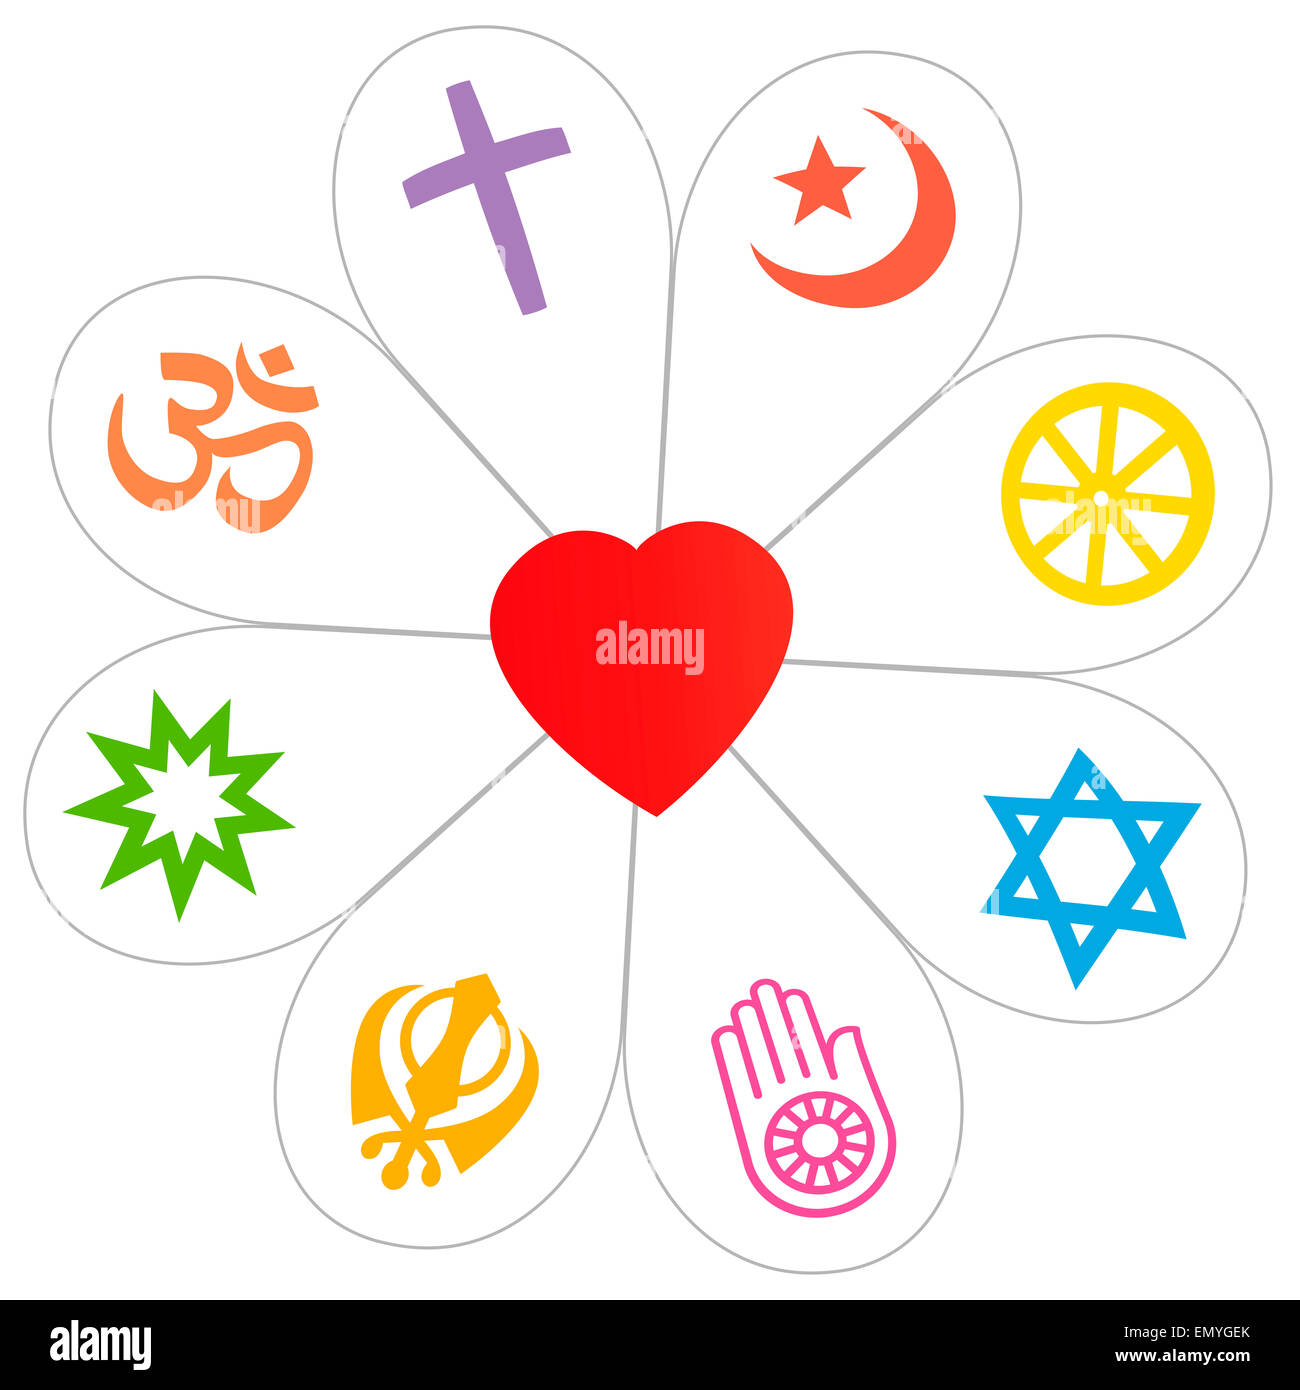 La religión símbolos que forman una flor, con un corazón como símbolo de la unidad religiosa o commonness. Ilustración sobre fondo blanco. Foto de stock